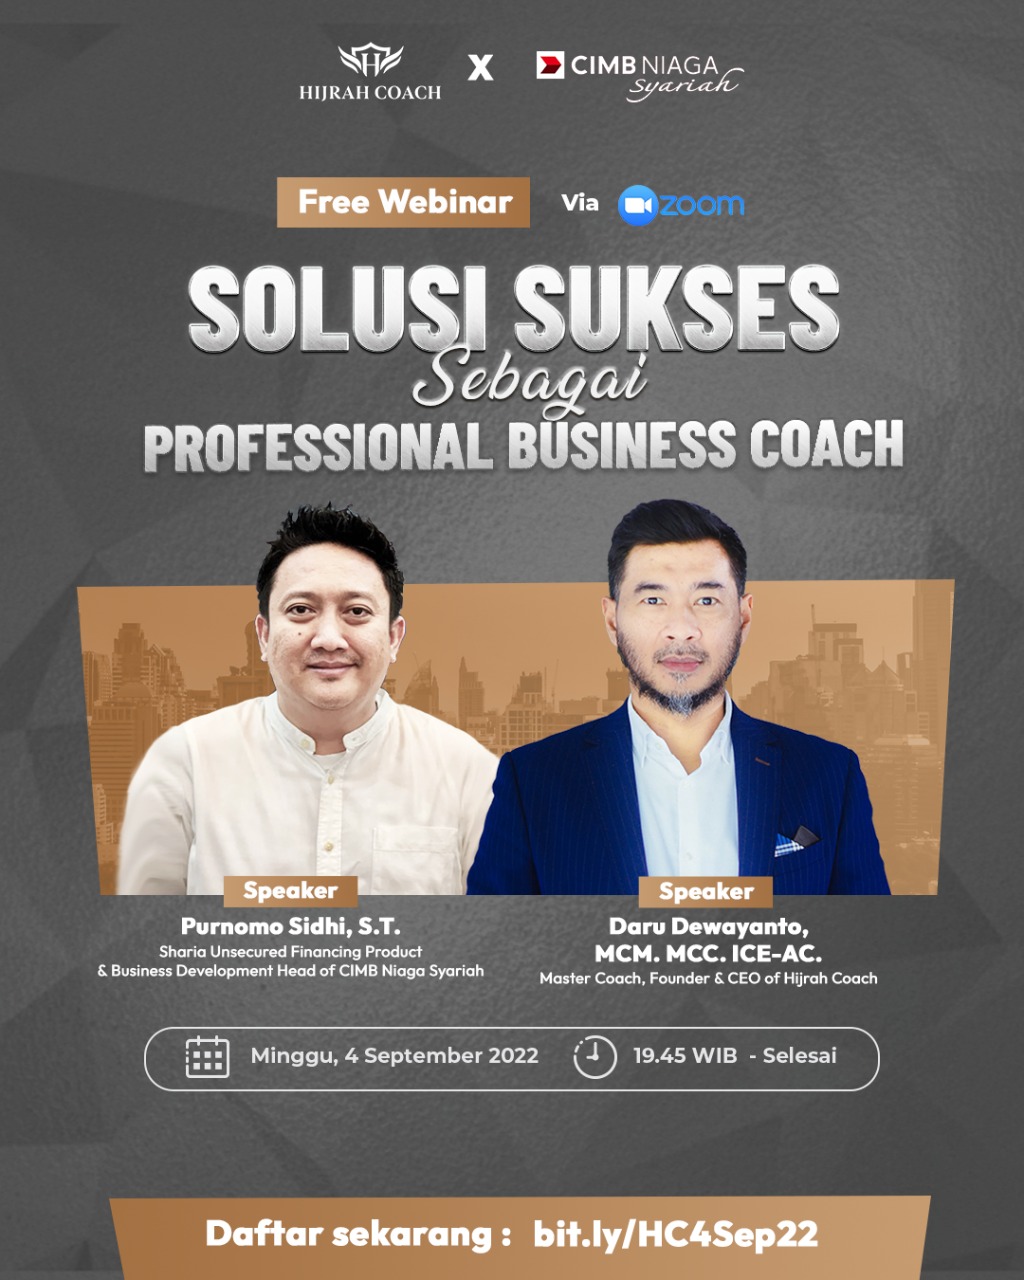 Free Webinar Solusi Sukses Sebagai Professional Business Coach